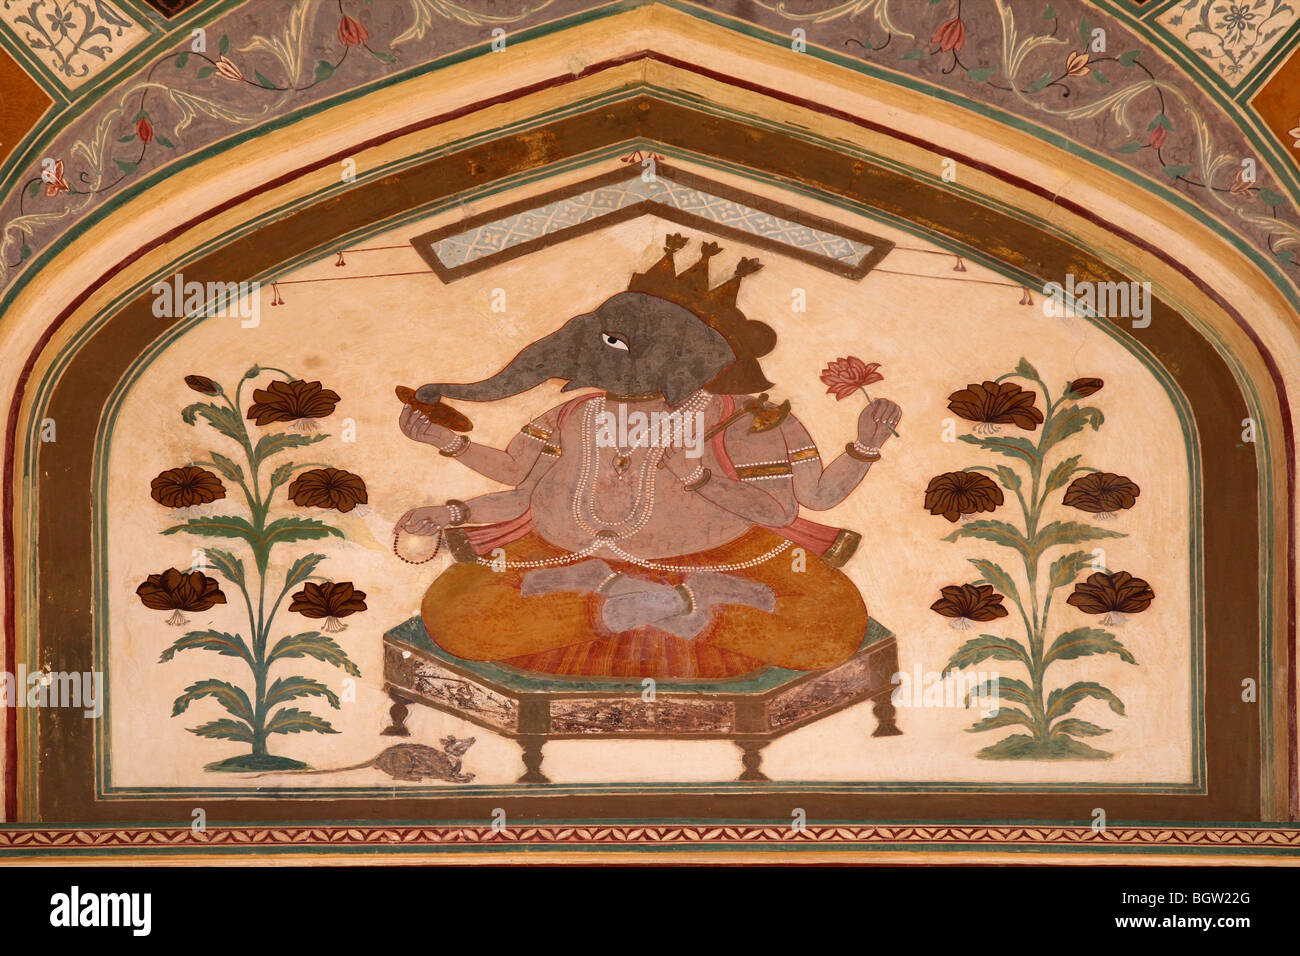 Une image de Dieu Gnesha, l'éléphant, au-dessus d'une porte à l'intérieur du fort d'Amber à Jaipur, Inde. Banque D'Images